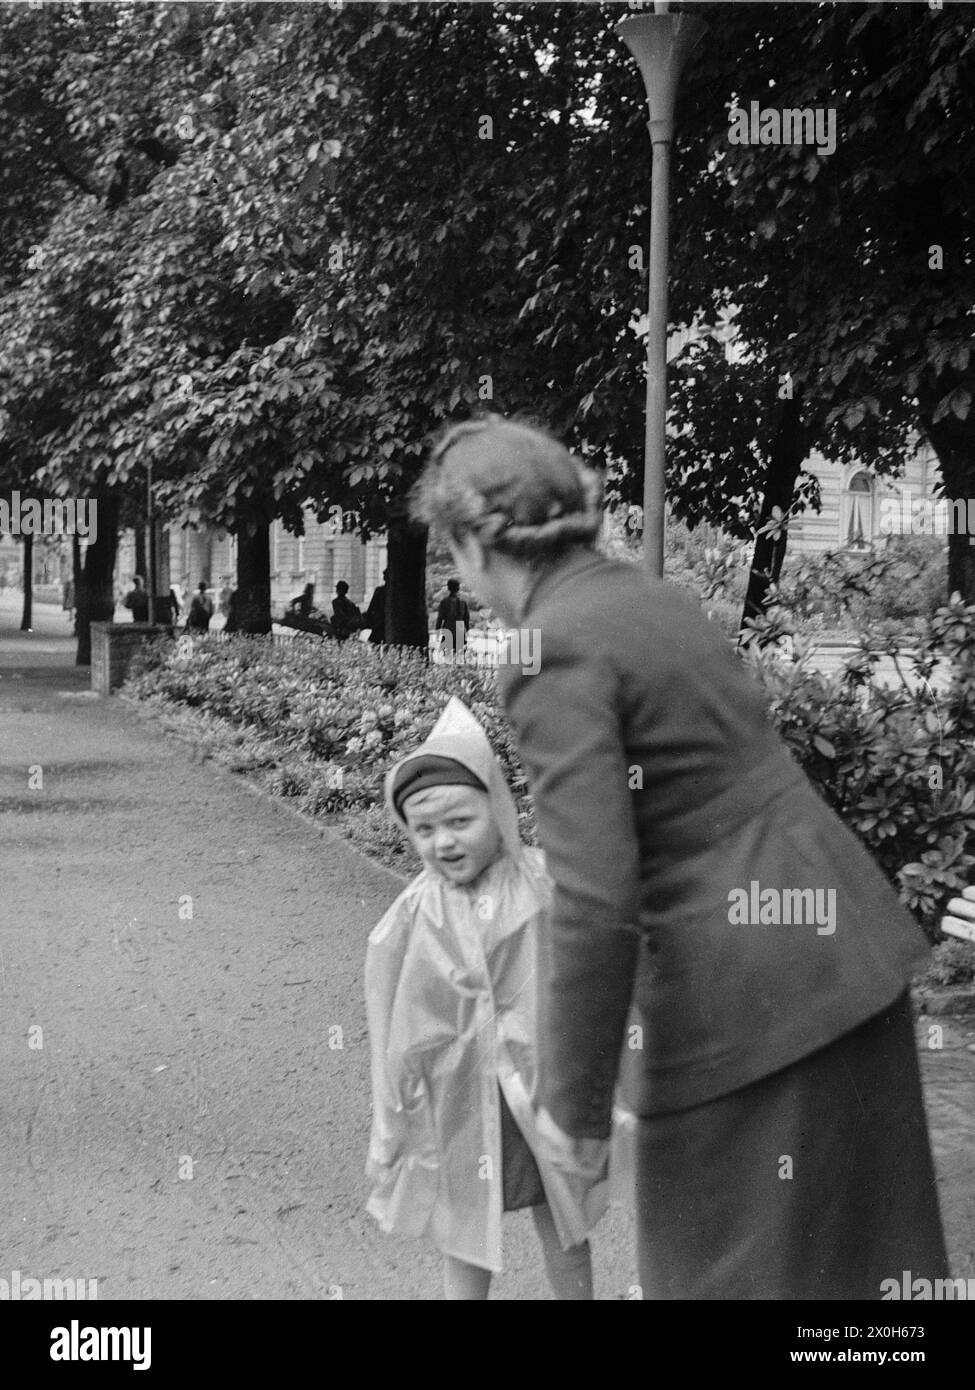 Une mère emmène son jeune fils se promener dans un parc en ville. L'enfant porte une cape de pluie. [traduction automatique] Banque D'Images